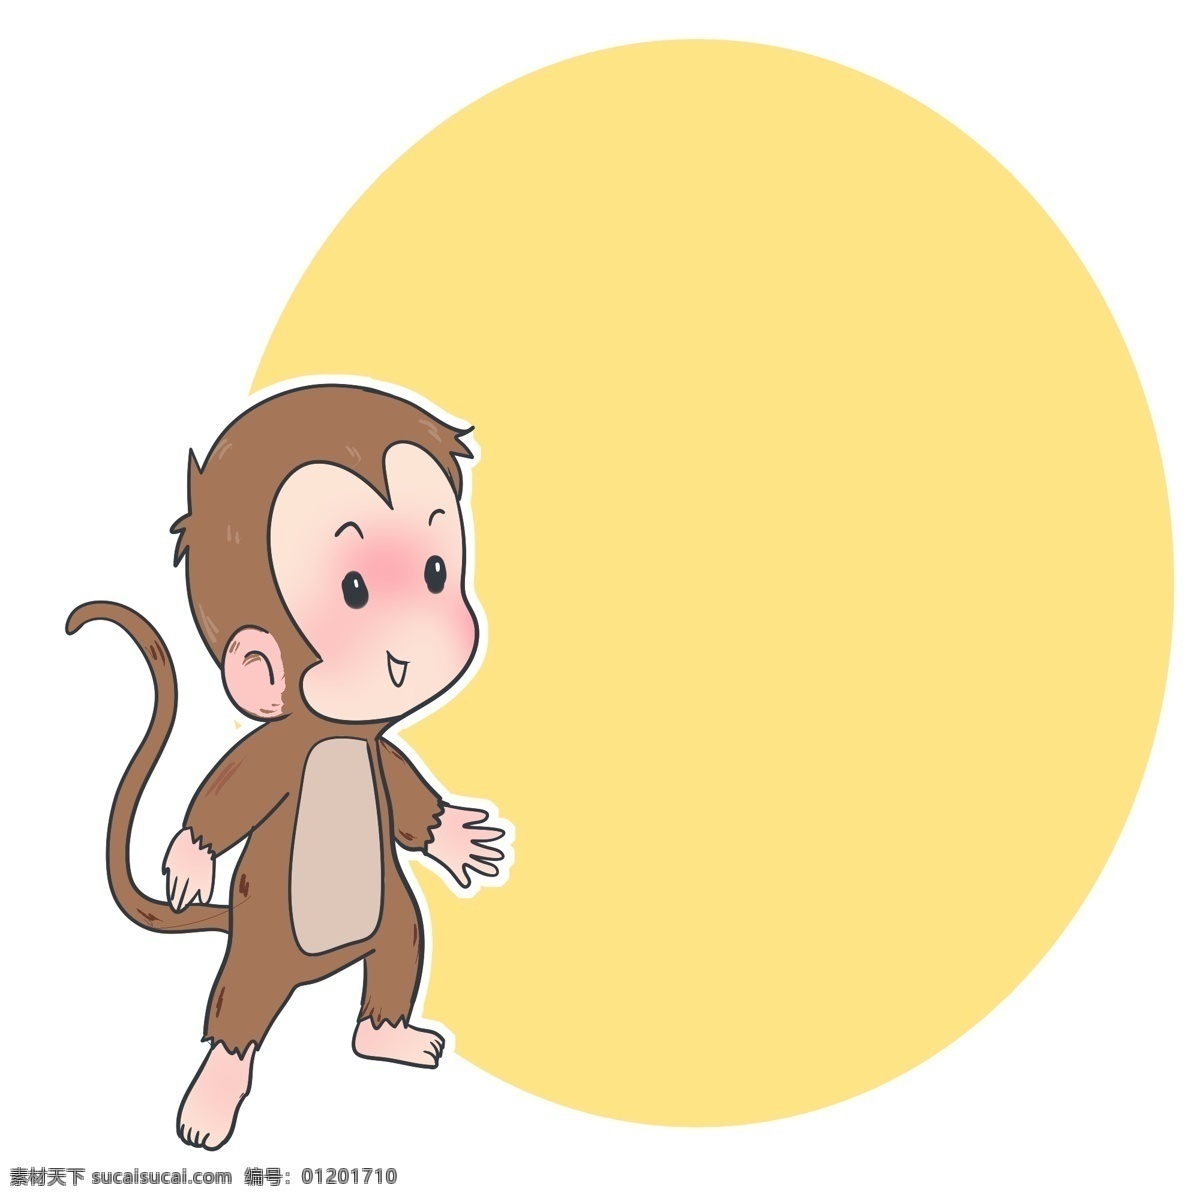 可爱 猴子 边框 插画 小 黄色装饰边框 动物装饰 卡通边框 可爱猴子边框 边框插画